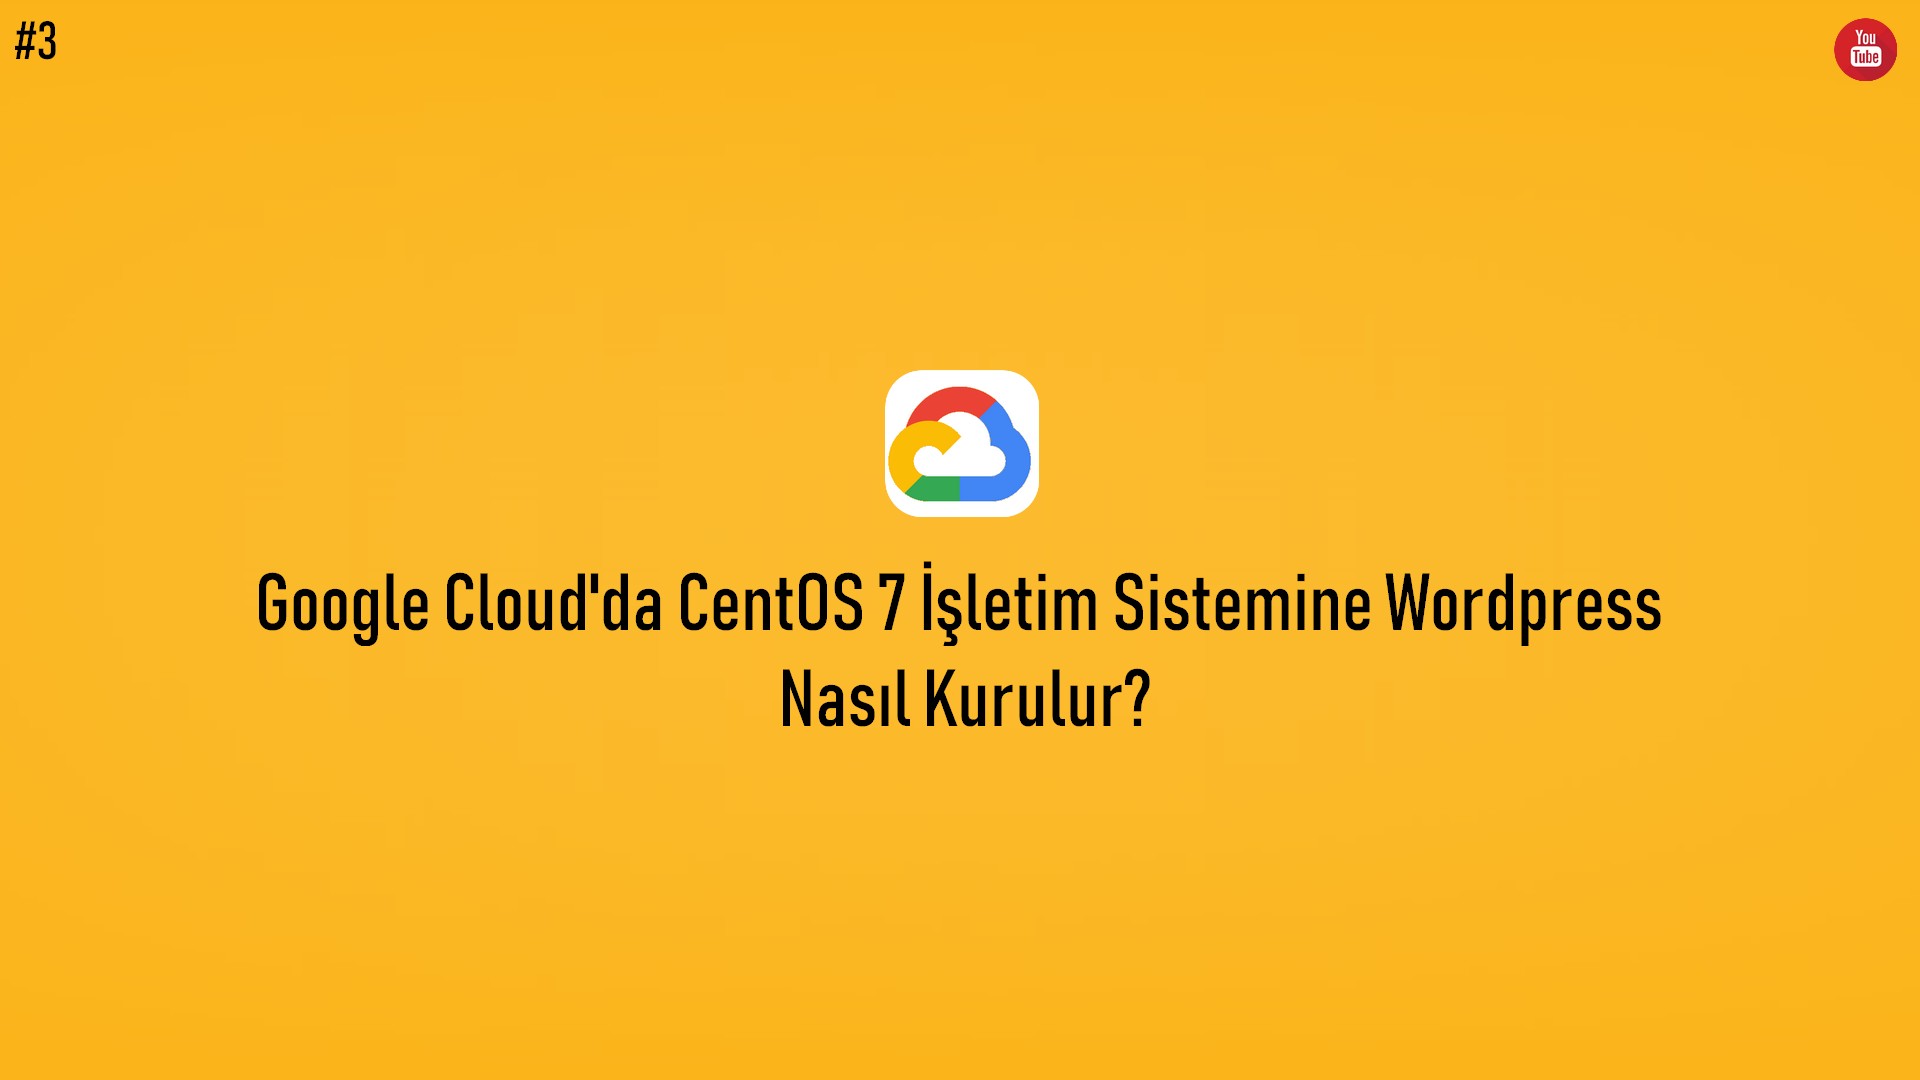 Google Cloud'da CentOS 7 İşletim Sistemine Wordpress Nasıl Kurulur? (Video İçerik) başlıklı içeriğin resmi